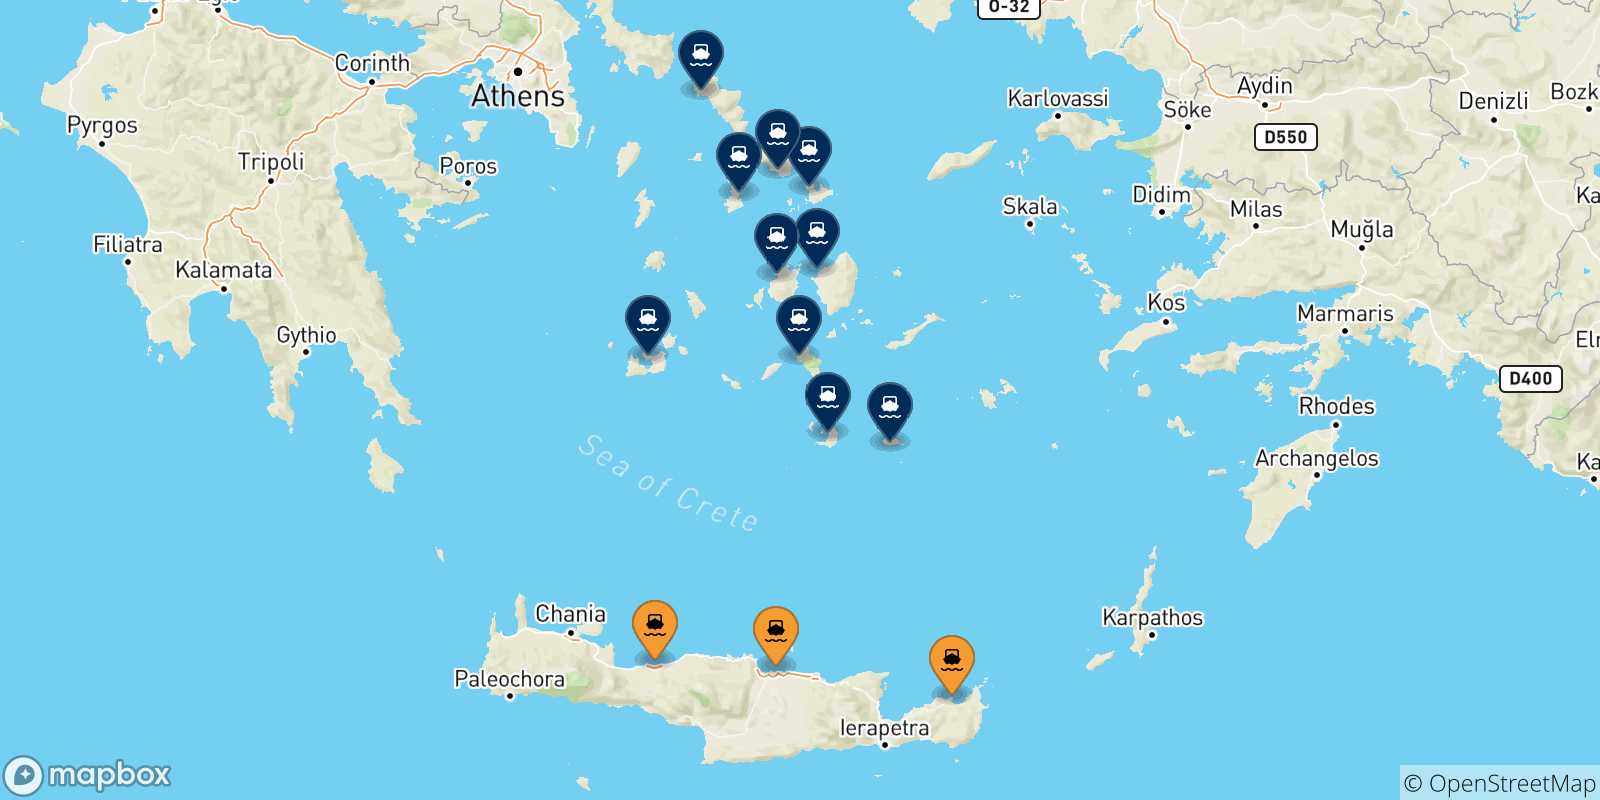 Mappa delle possibili rotte tra Creta e le Isole Cicladi